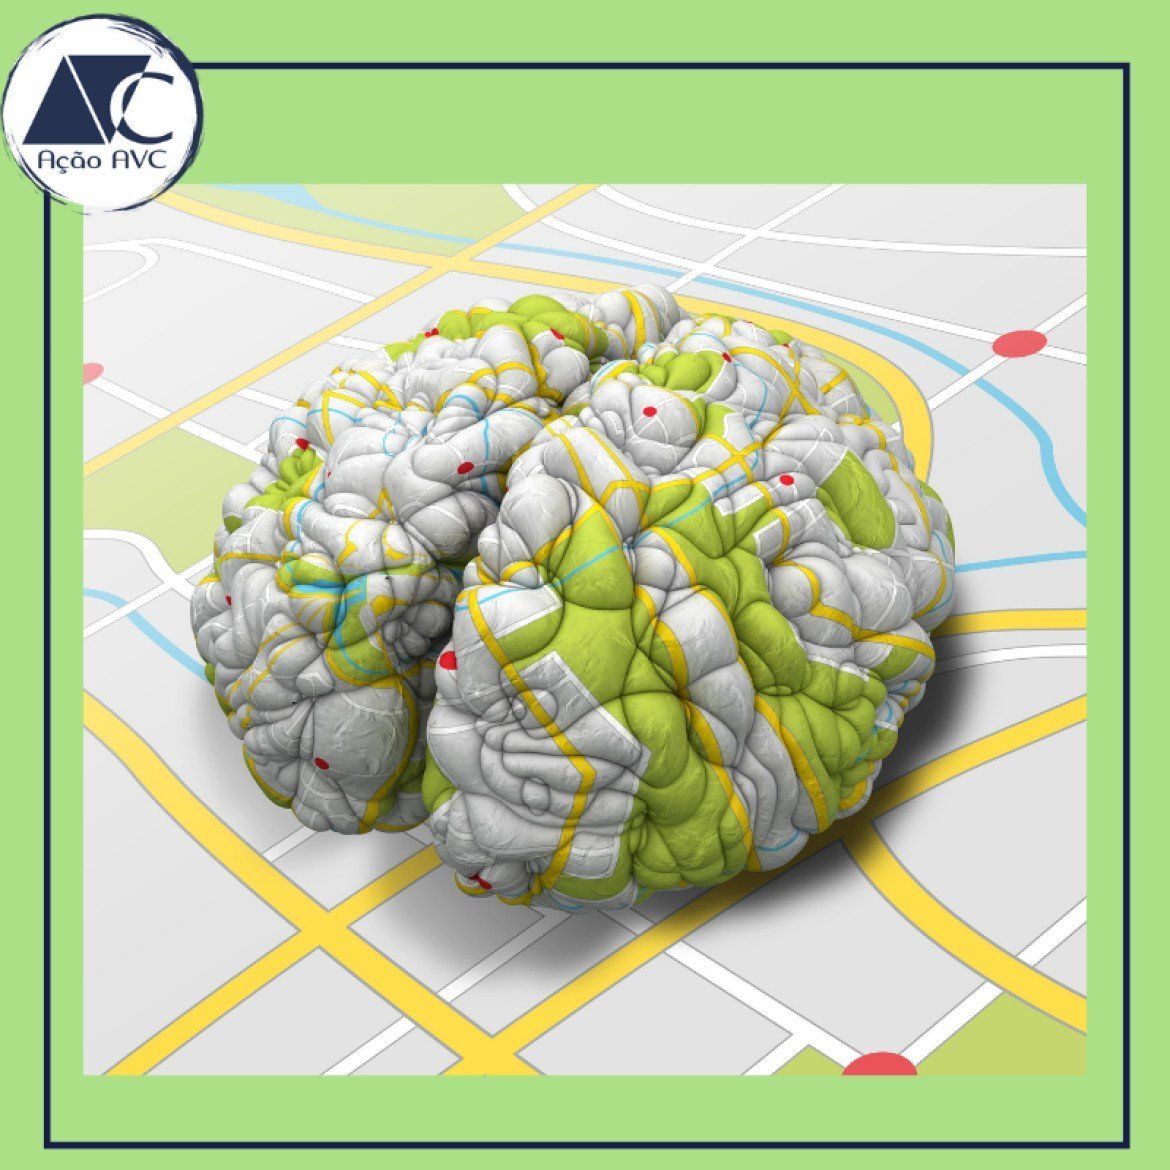 Cérebro humano comparado a um mapa